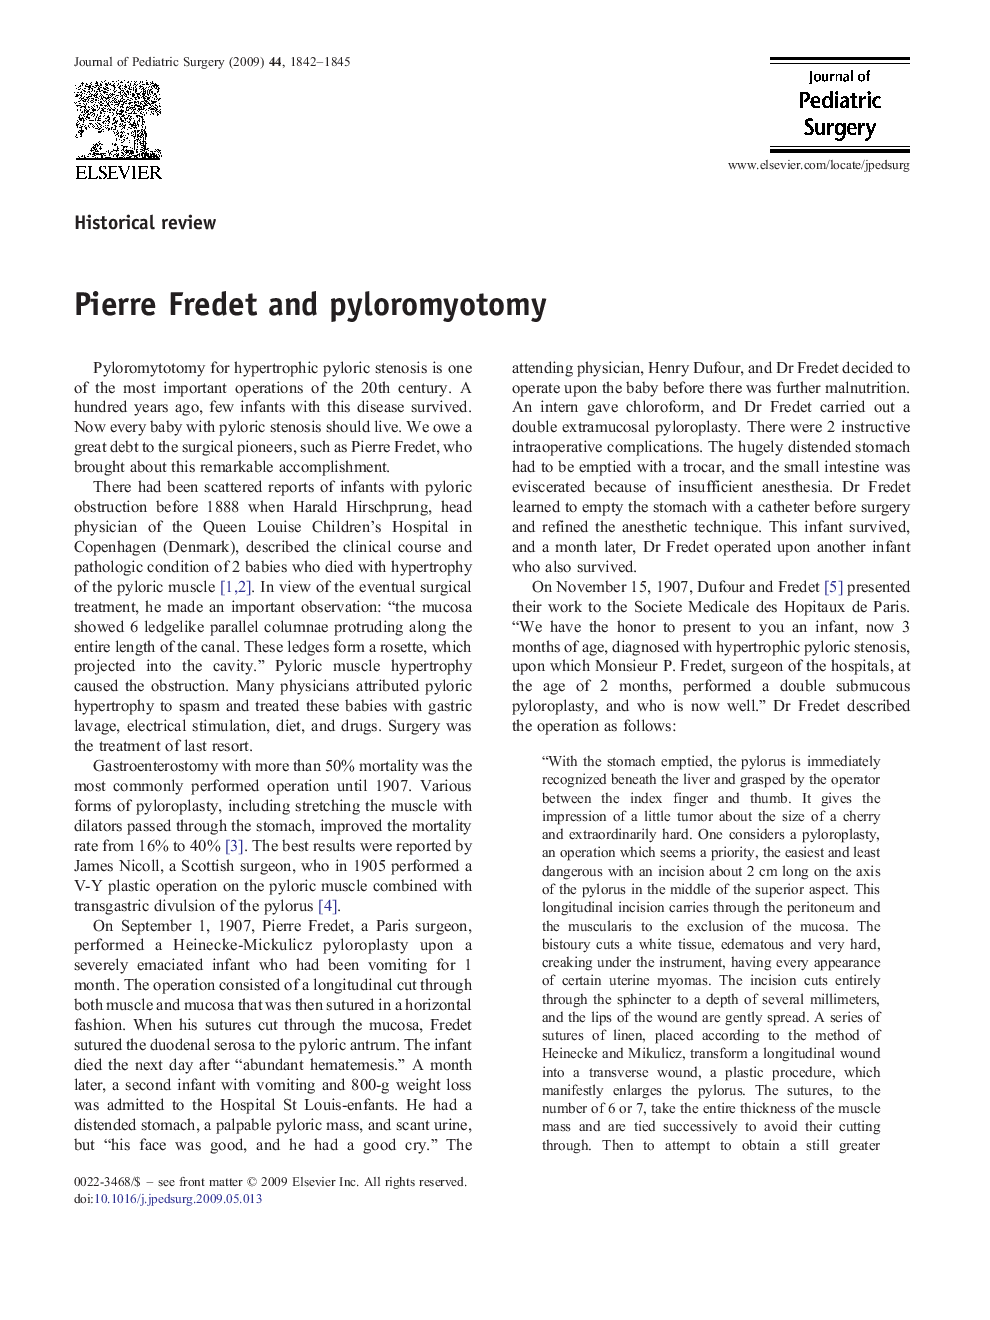 Pierre Fredet and pyloromyotomy